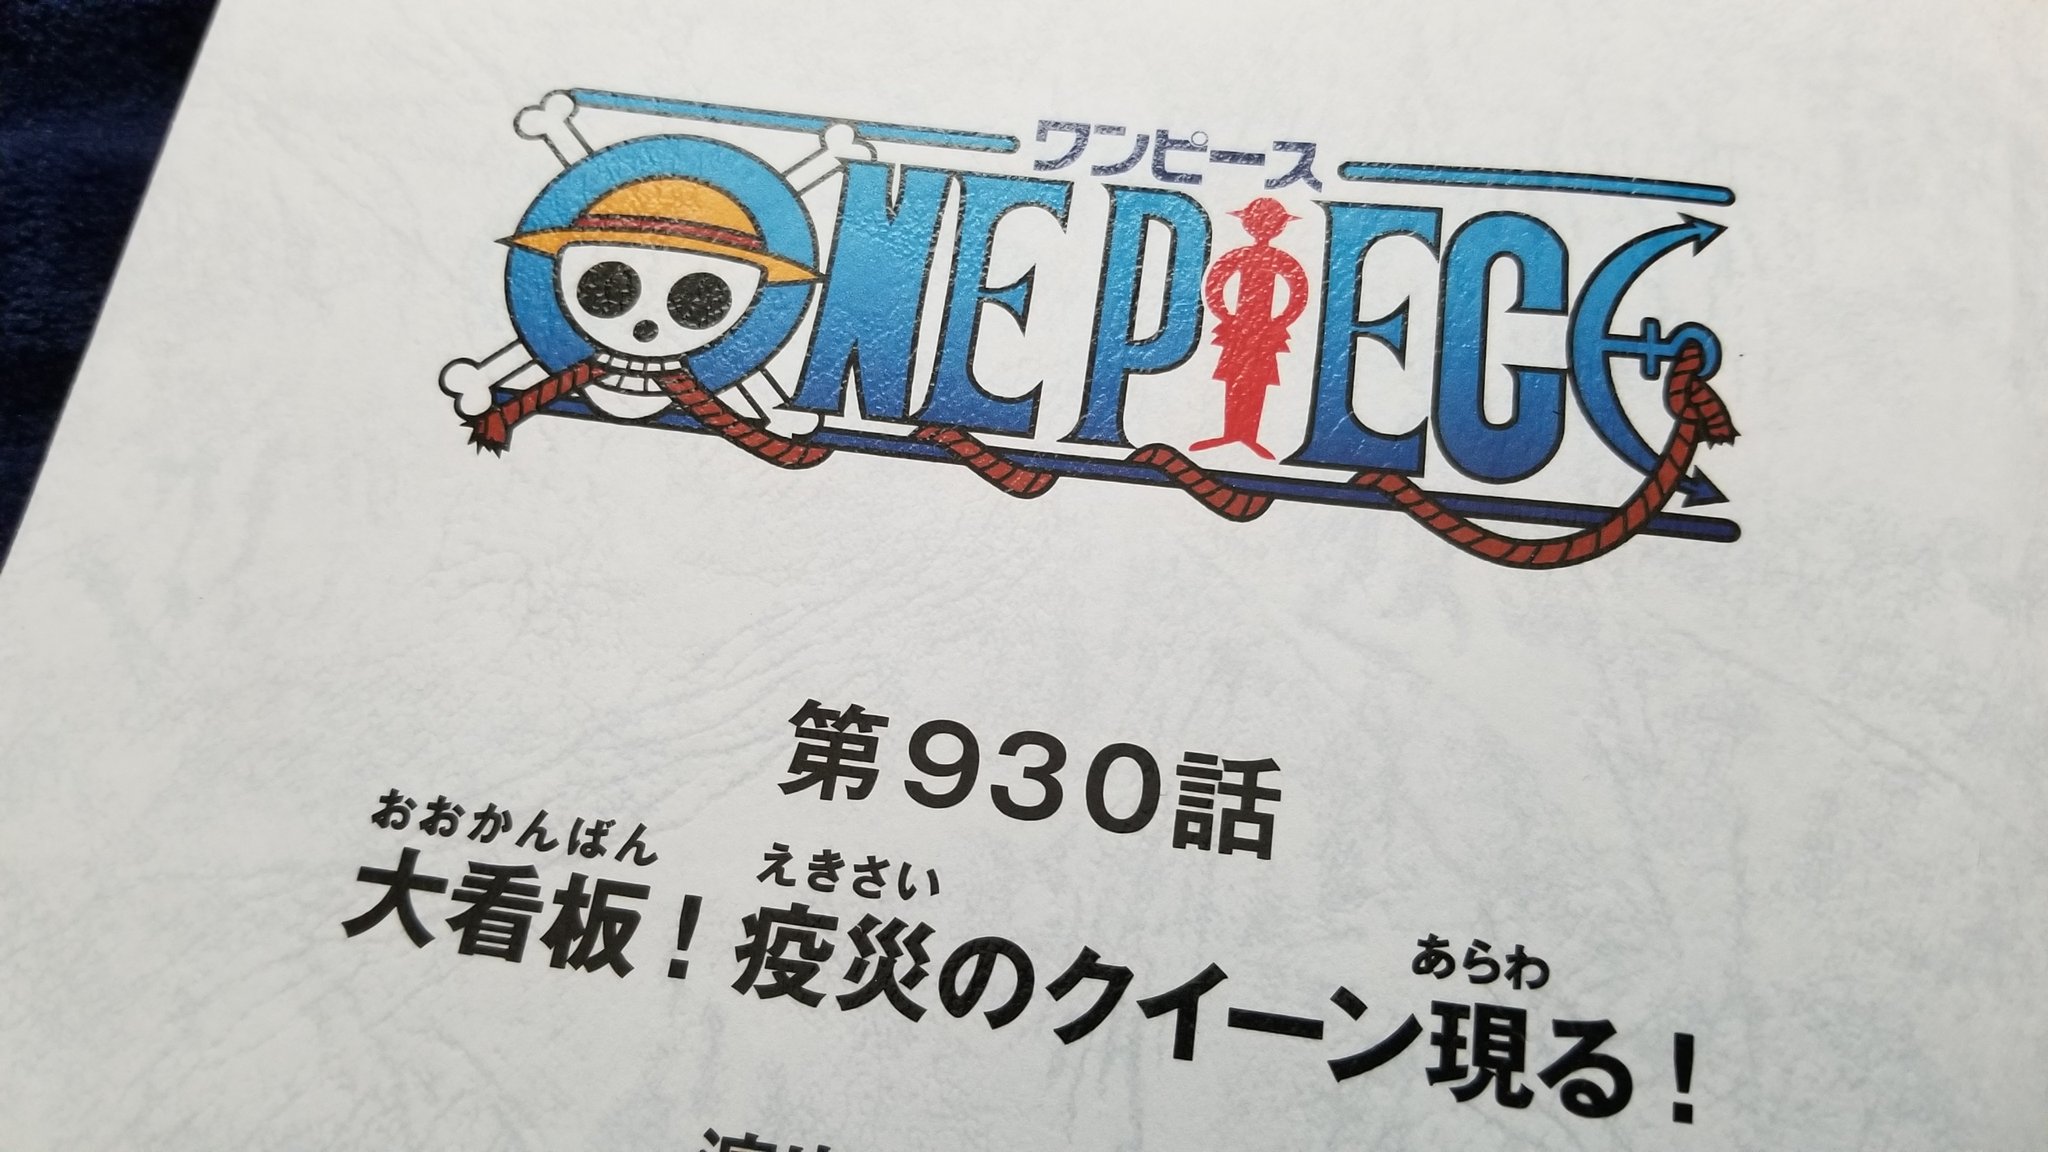 Twitter 上的 庄司宇芽香 本日放送されました アニメ One Piece 第930話 大看板 疫災のクイーン現る に ソリティア役で出演しておりましたっ ムキーーーーっ ワンピース ズムズムズムズム T Co Muzcz0e8yk Twitter